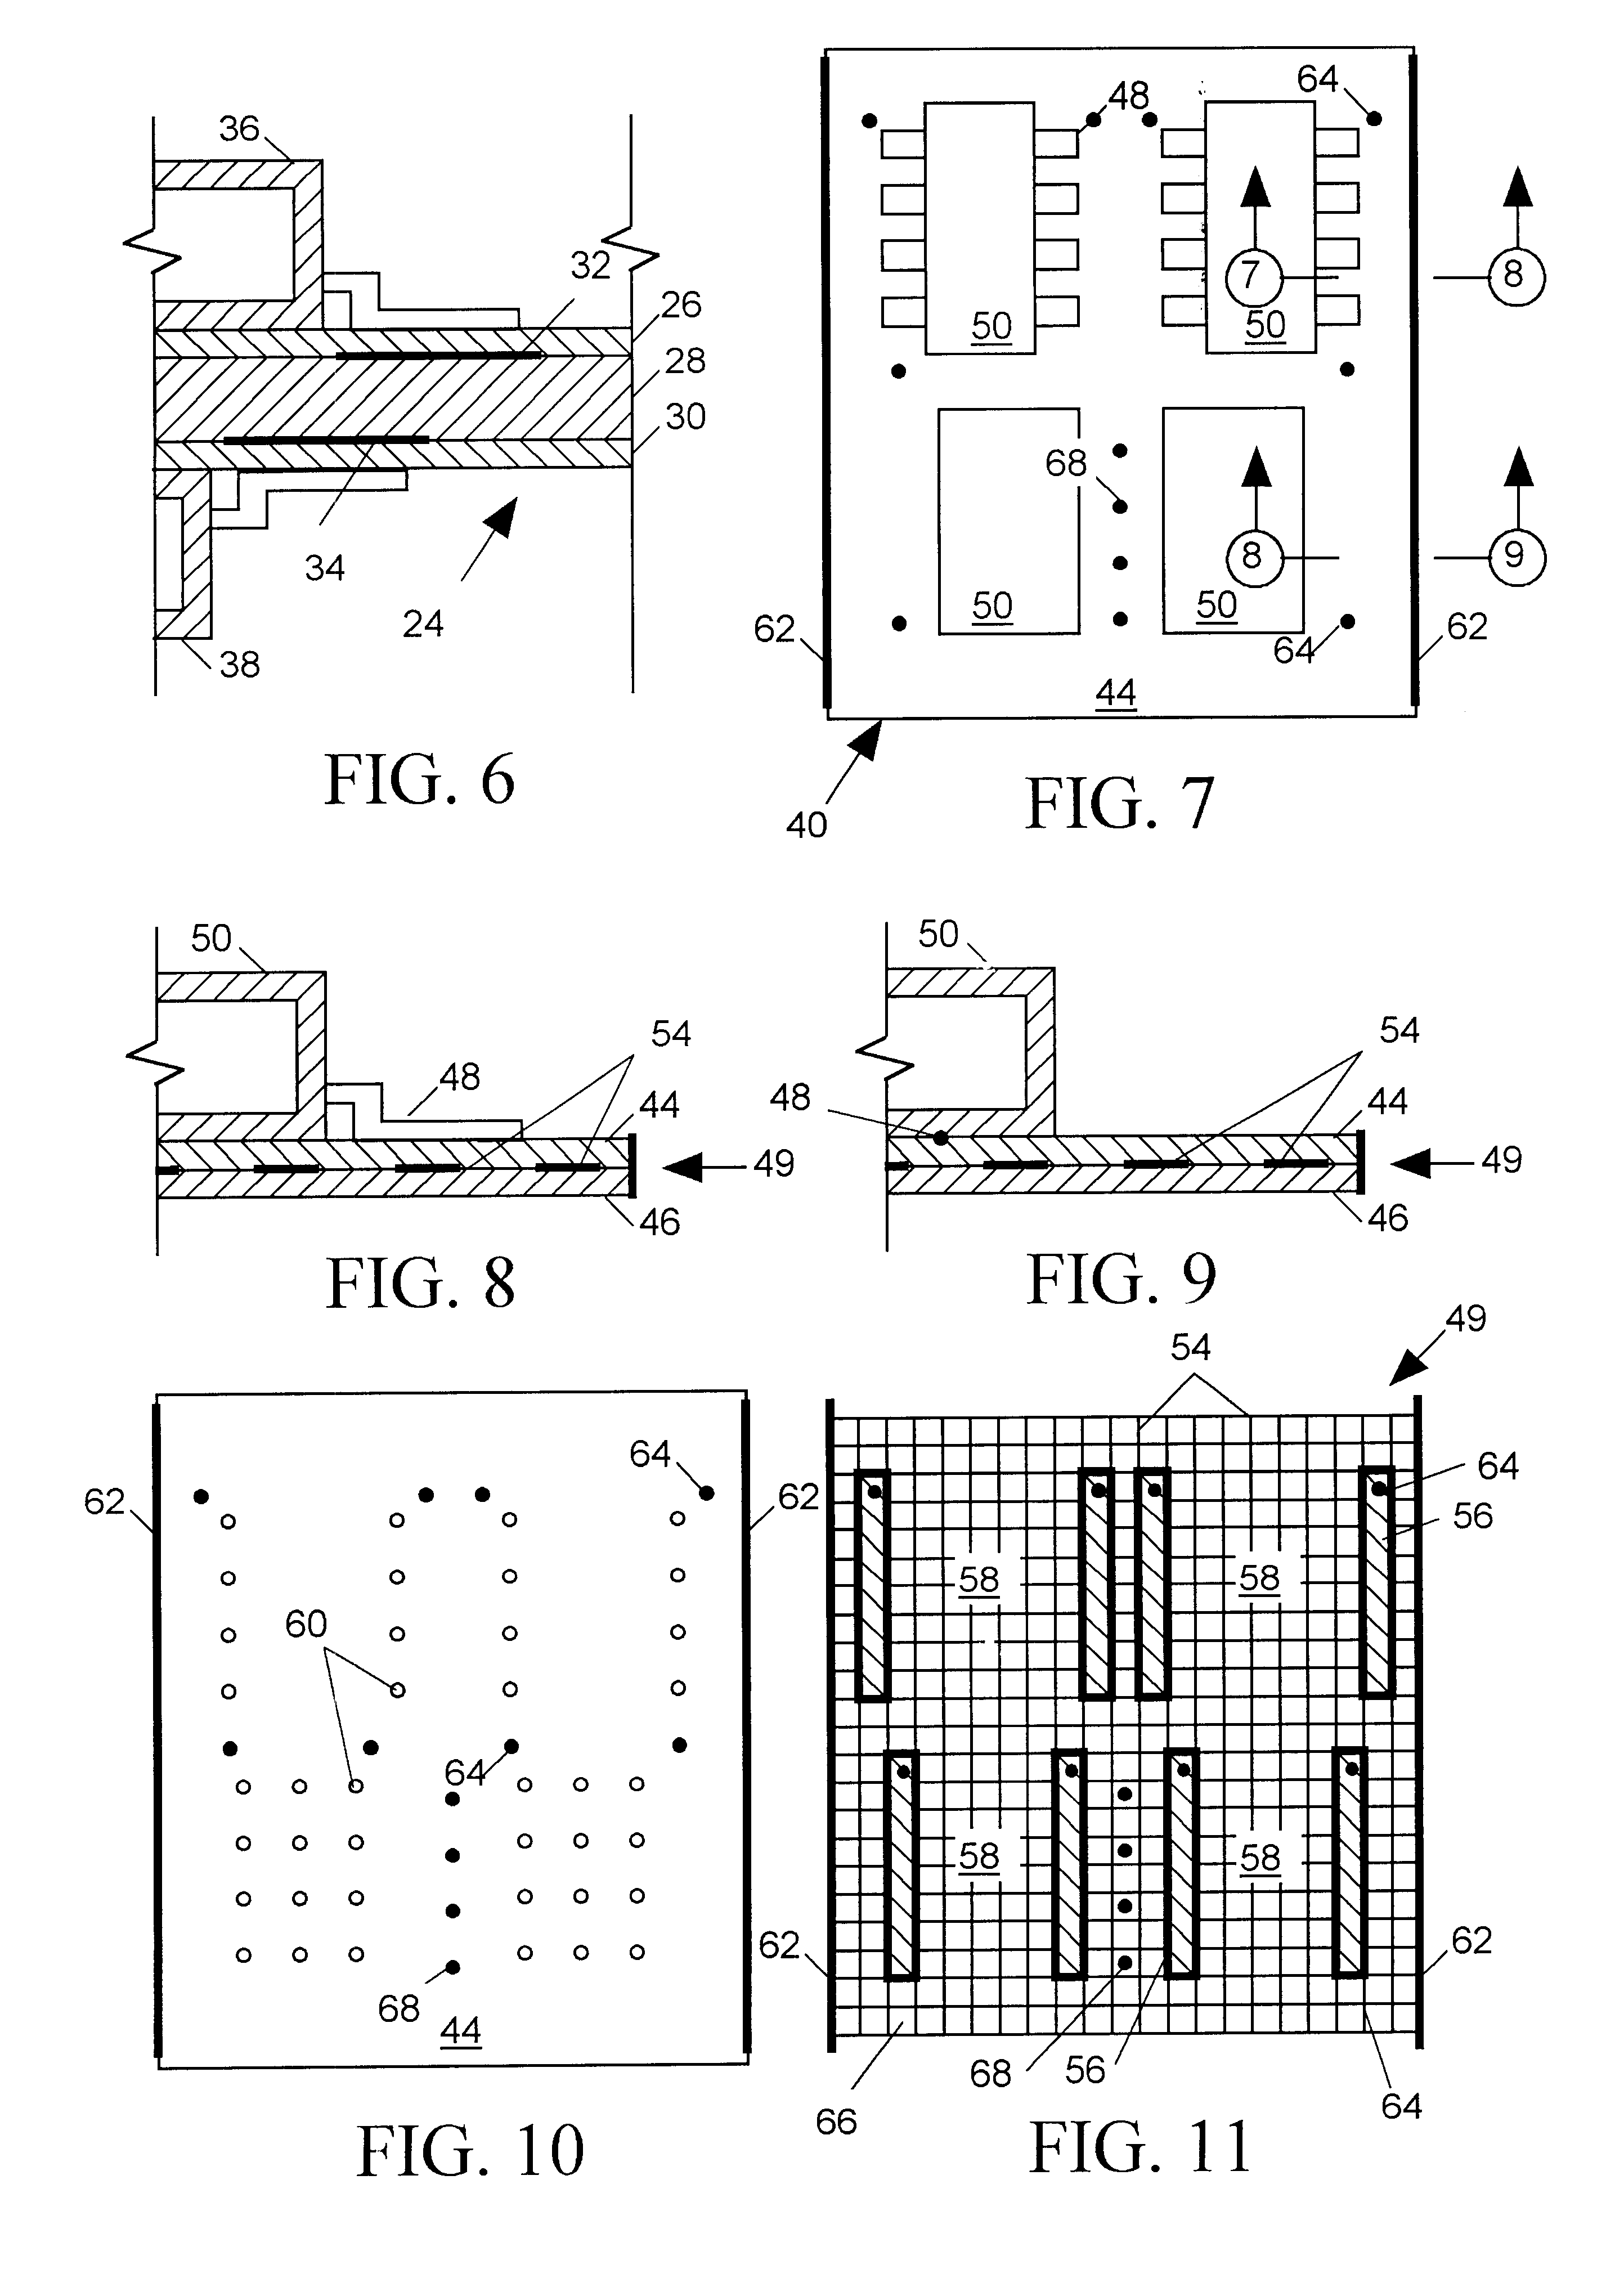 Self-heating circuit board